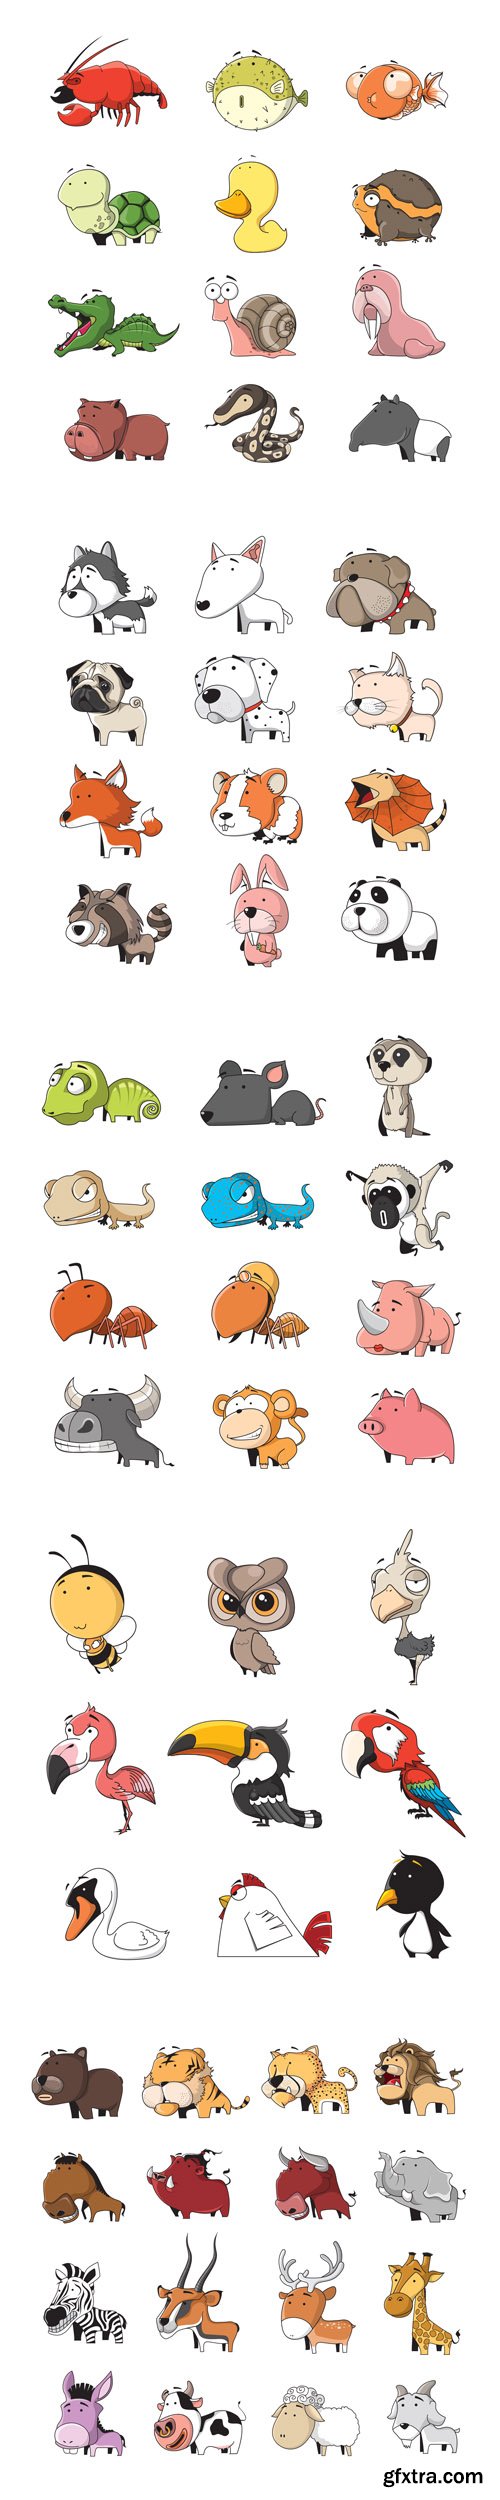 Cartoon animals set - Vectors A000030